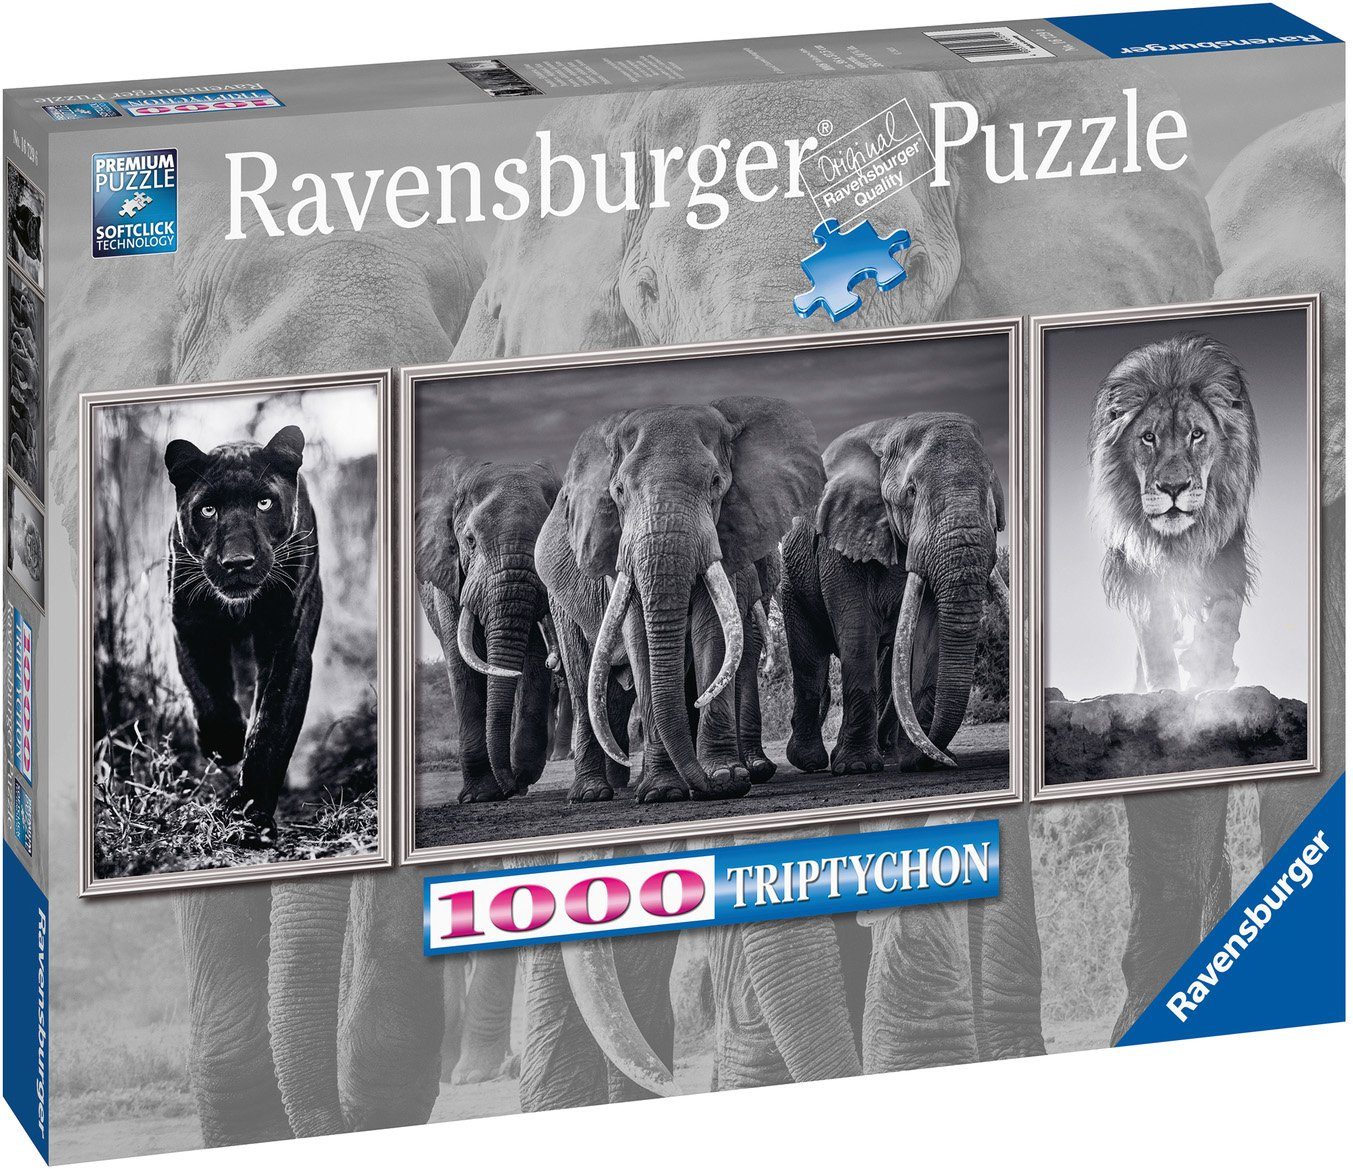 Löwe, Elefanten, Puzzleteile, Triptychon; - Ravensburger weltweit; Puzzle Made - schützt 1000 Germany Panter, in FSC® Wald